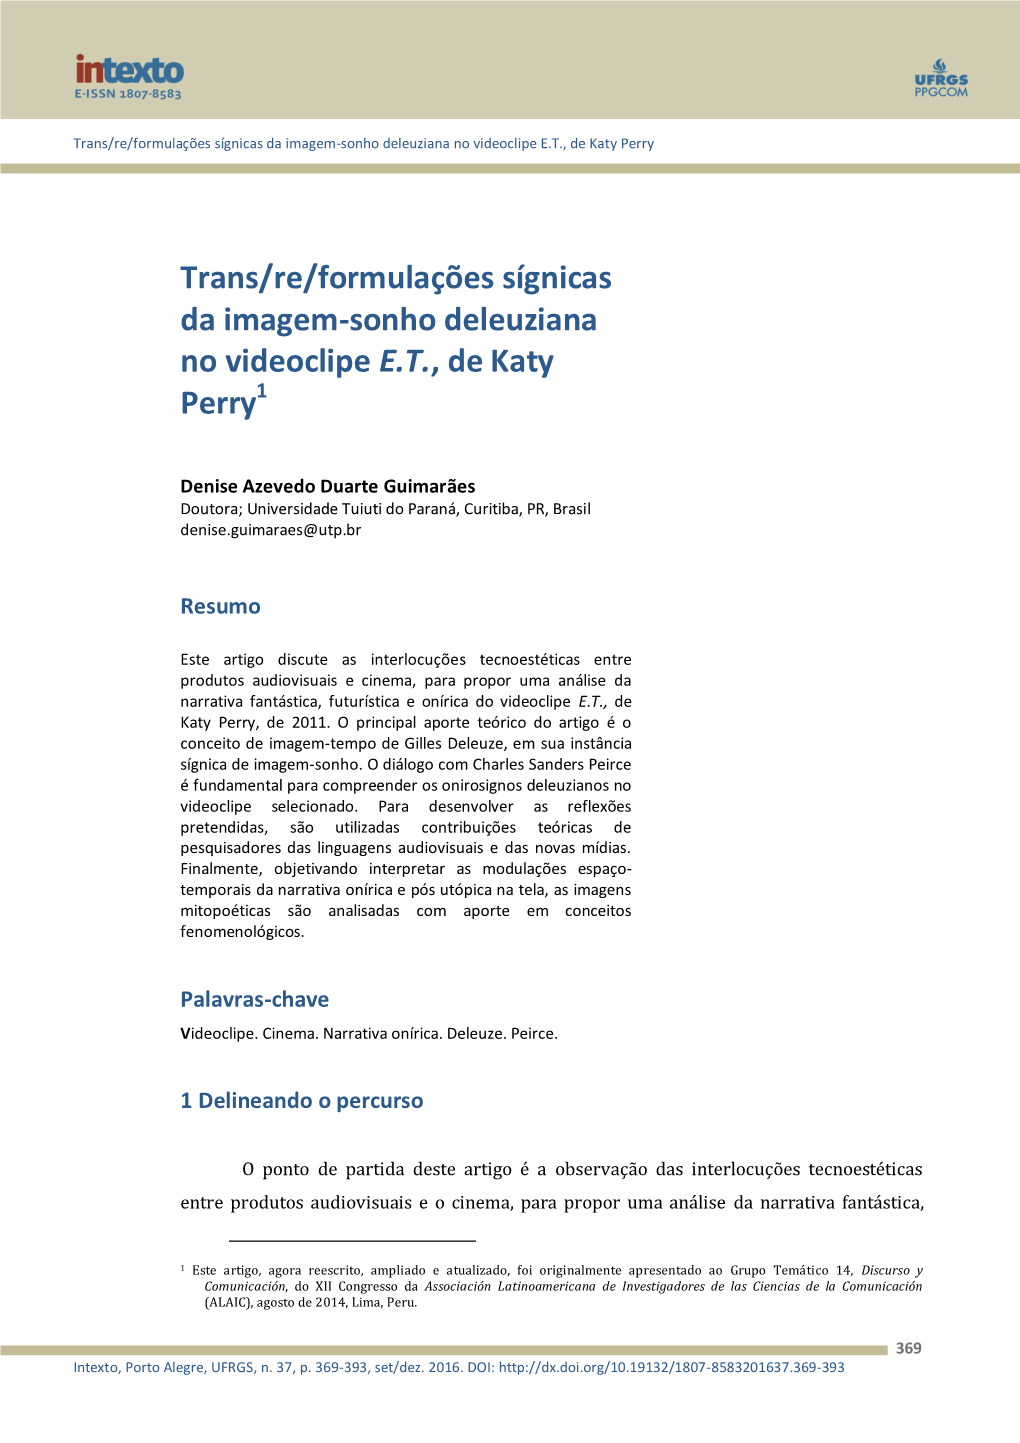 Trans/Re/Formulações Sígnicas Da Imagem-Sonho Deleuziana No Videoclipe E.T., De Katy Perry